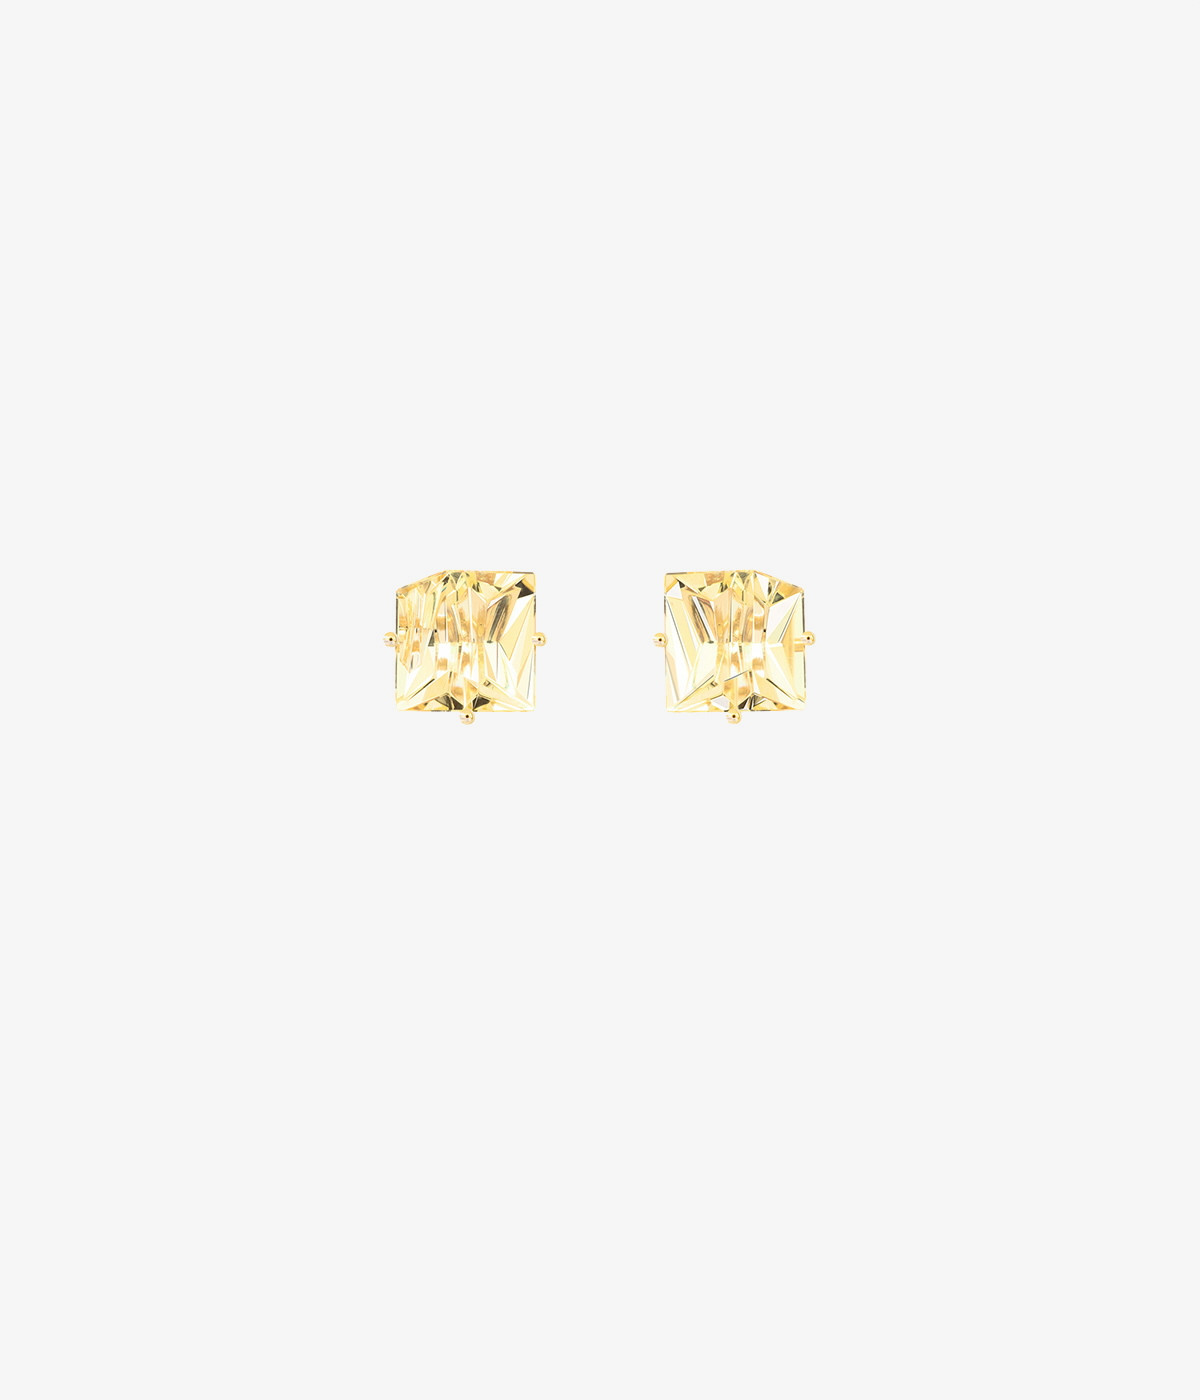 Gold earrings golden beryls